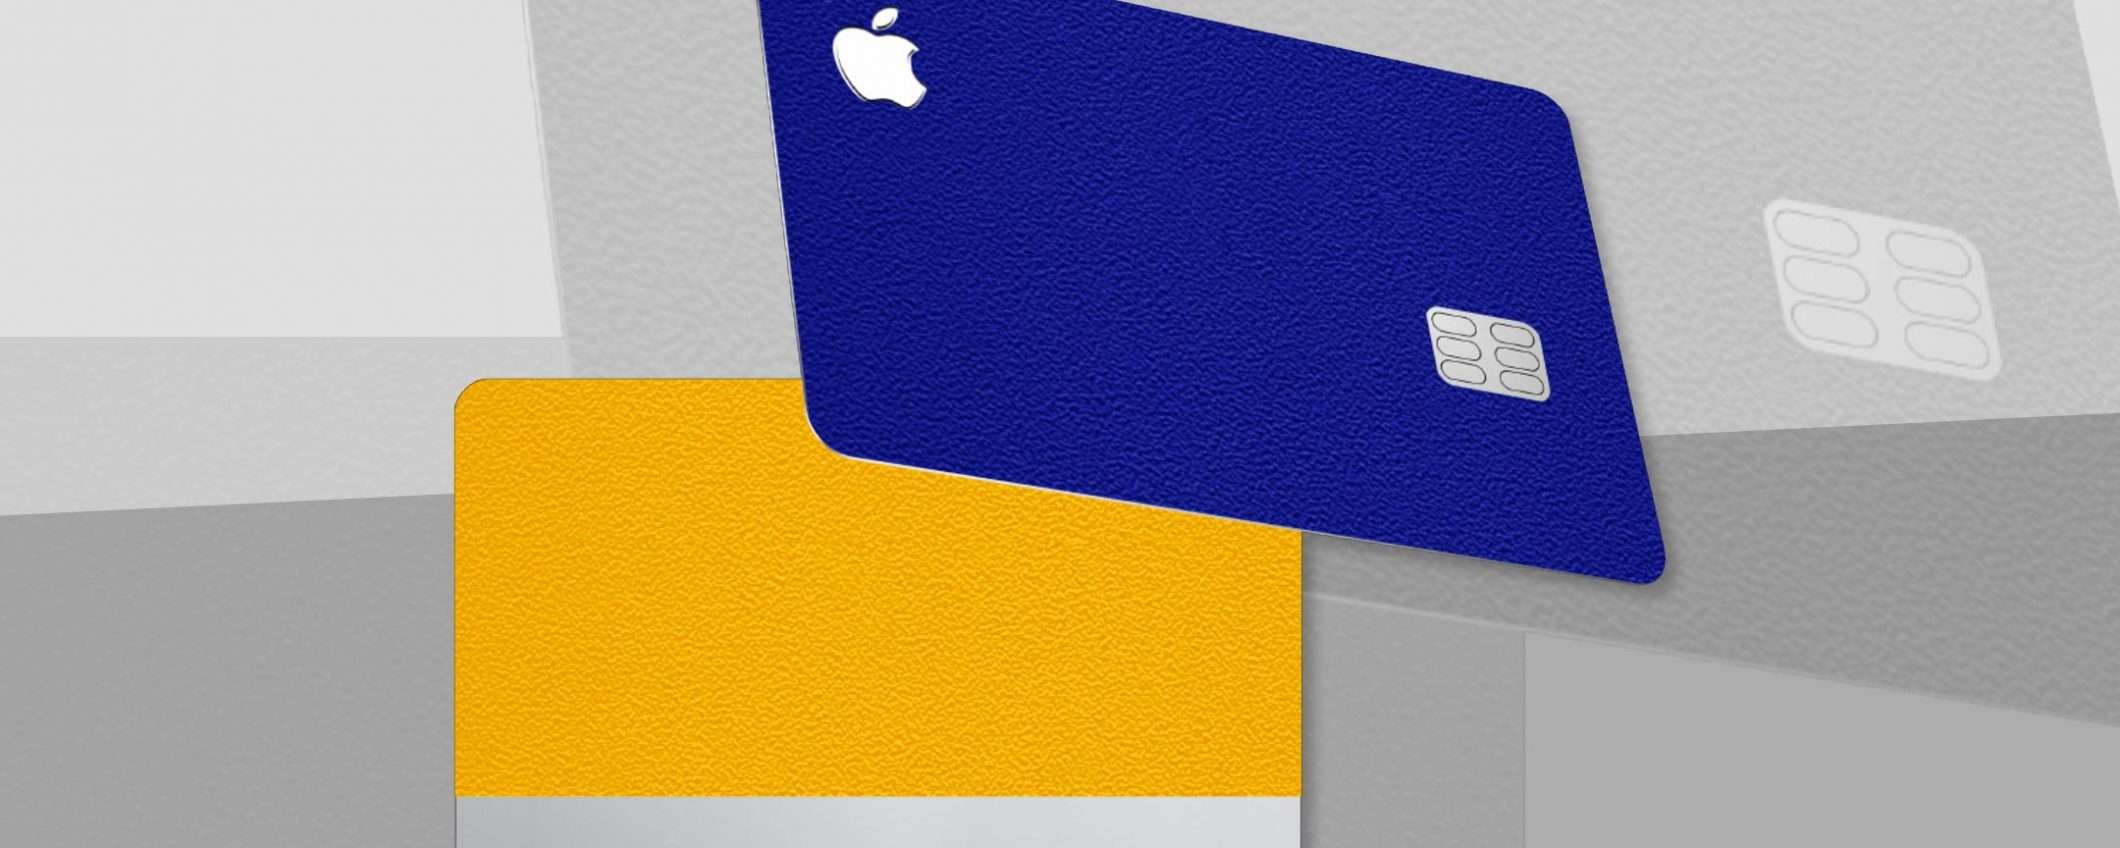 È successo: ecco le prime skin per Apple Card